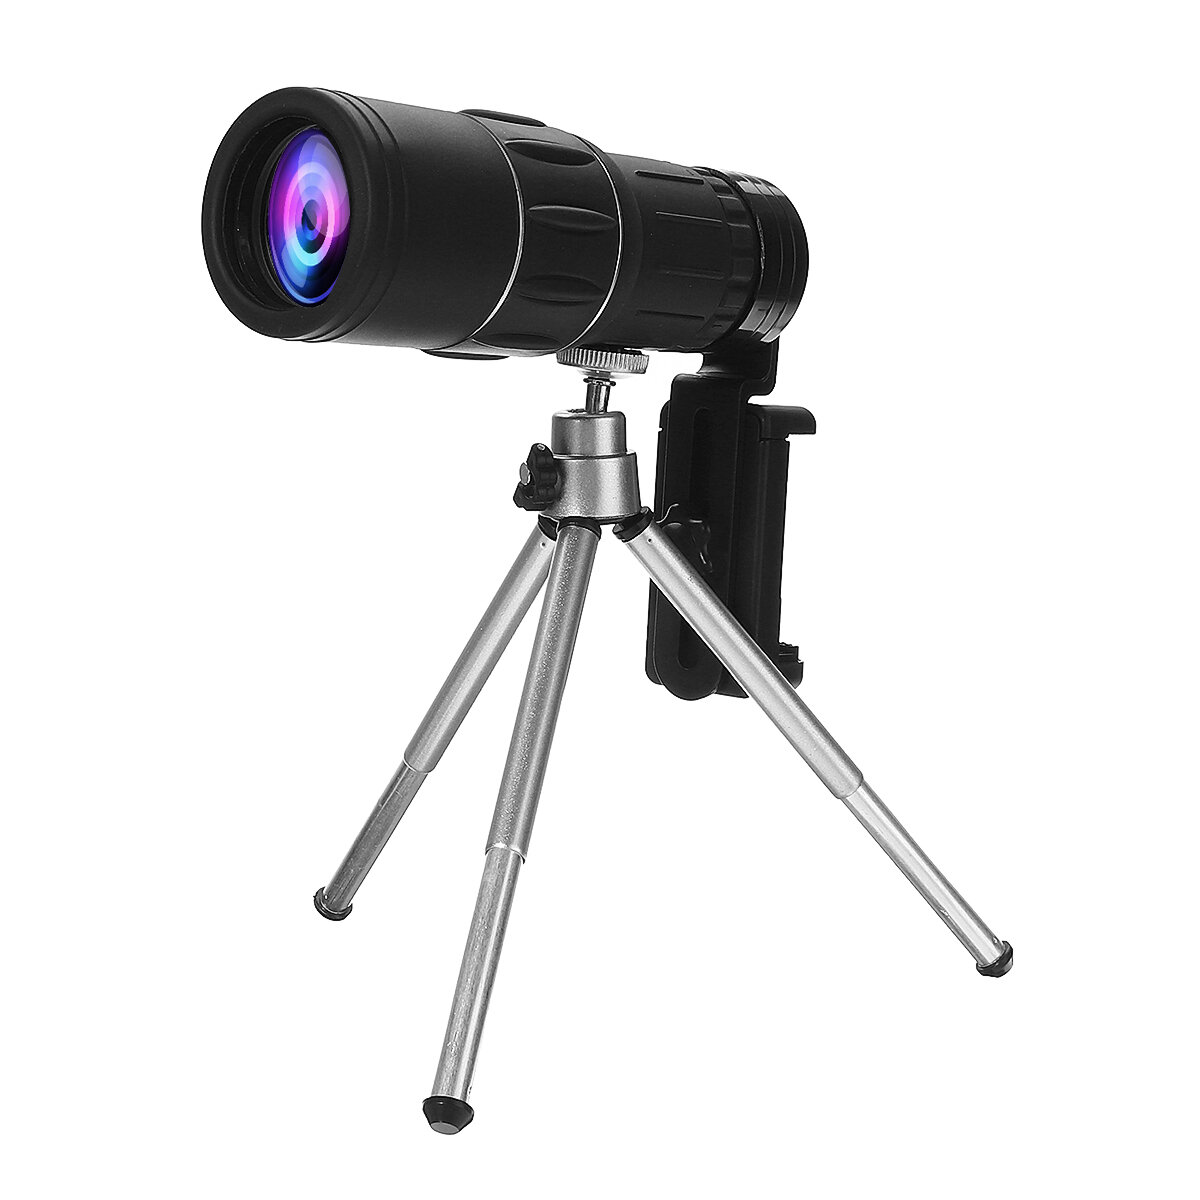 40X60 Монокулярный телескоп для отдыха на природе, походов, путешествий, широкоугольный HD ночной вид с треногой и зажимом.